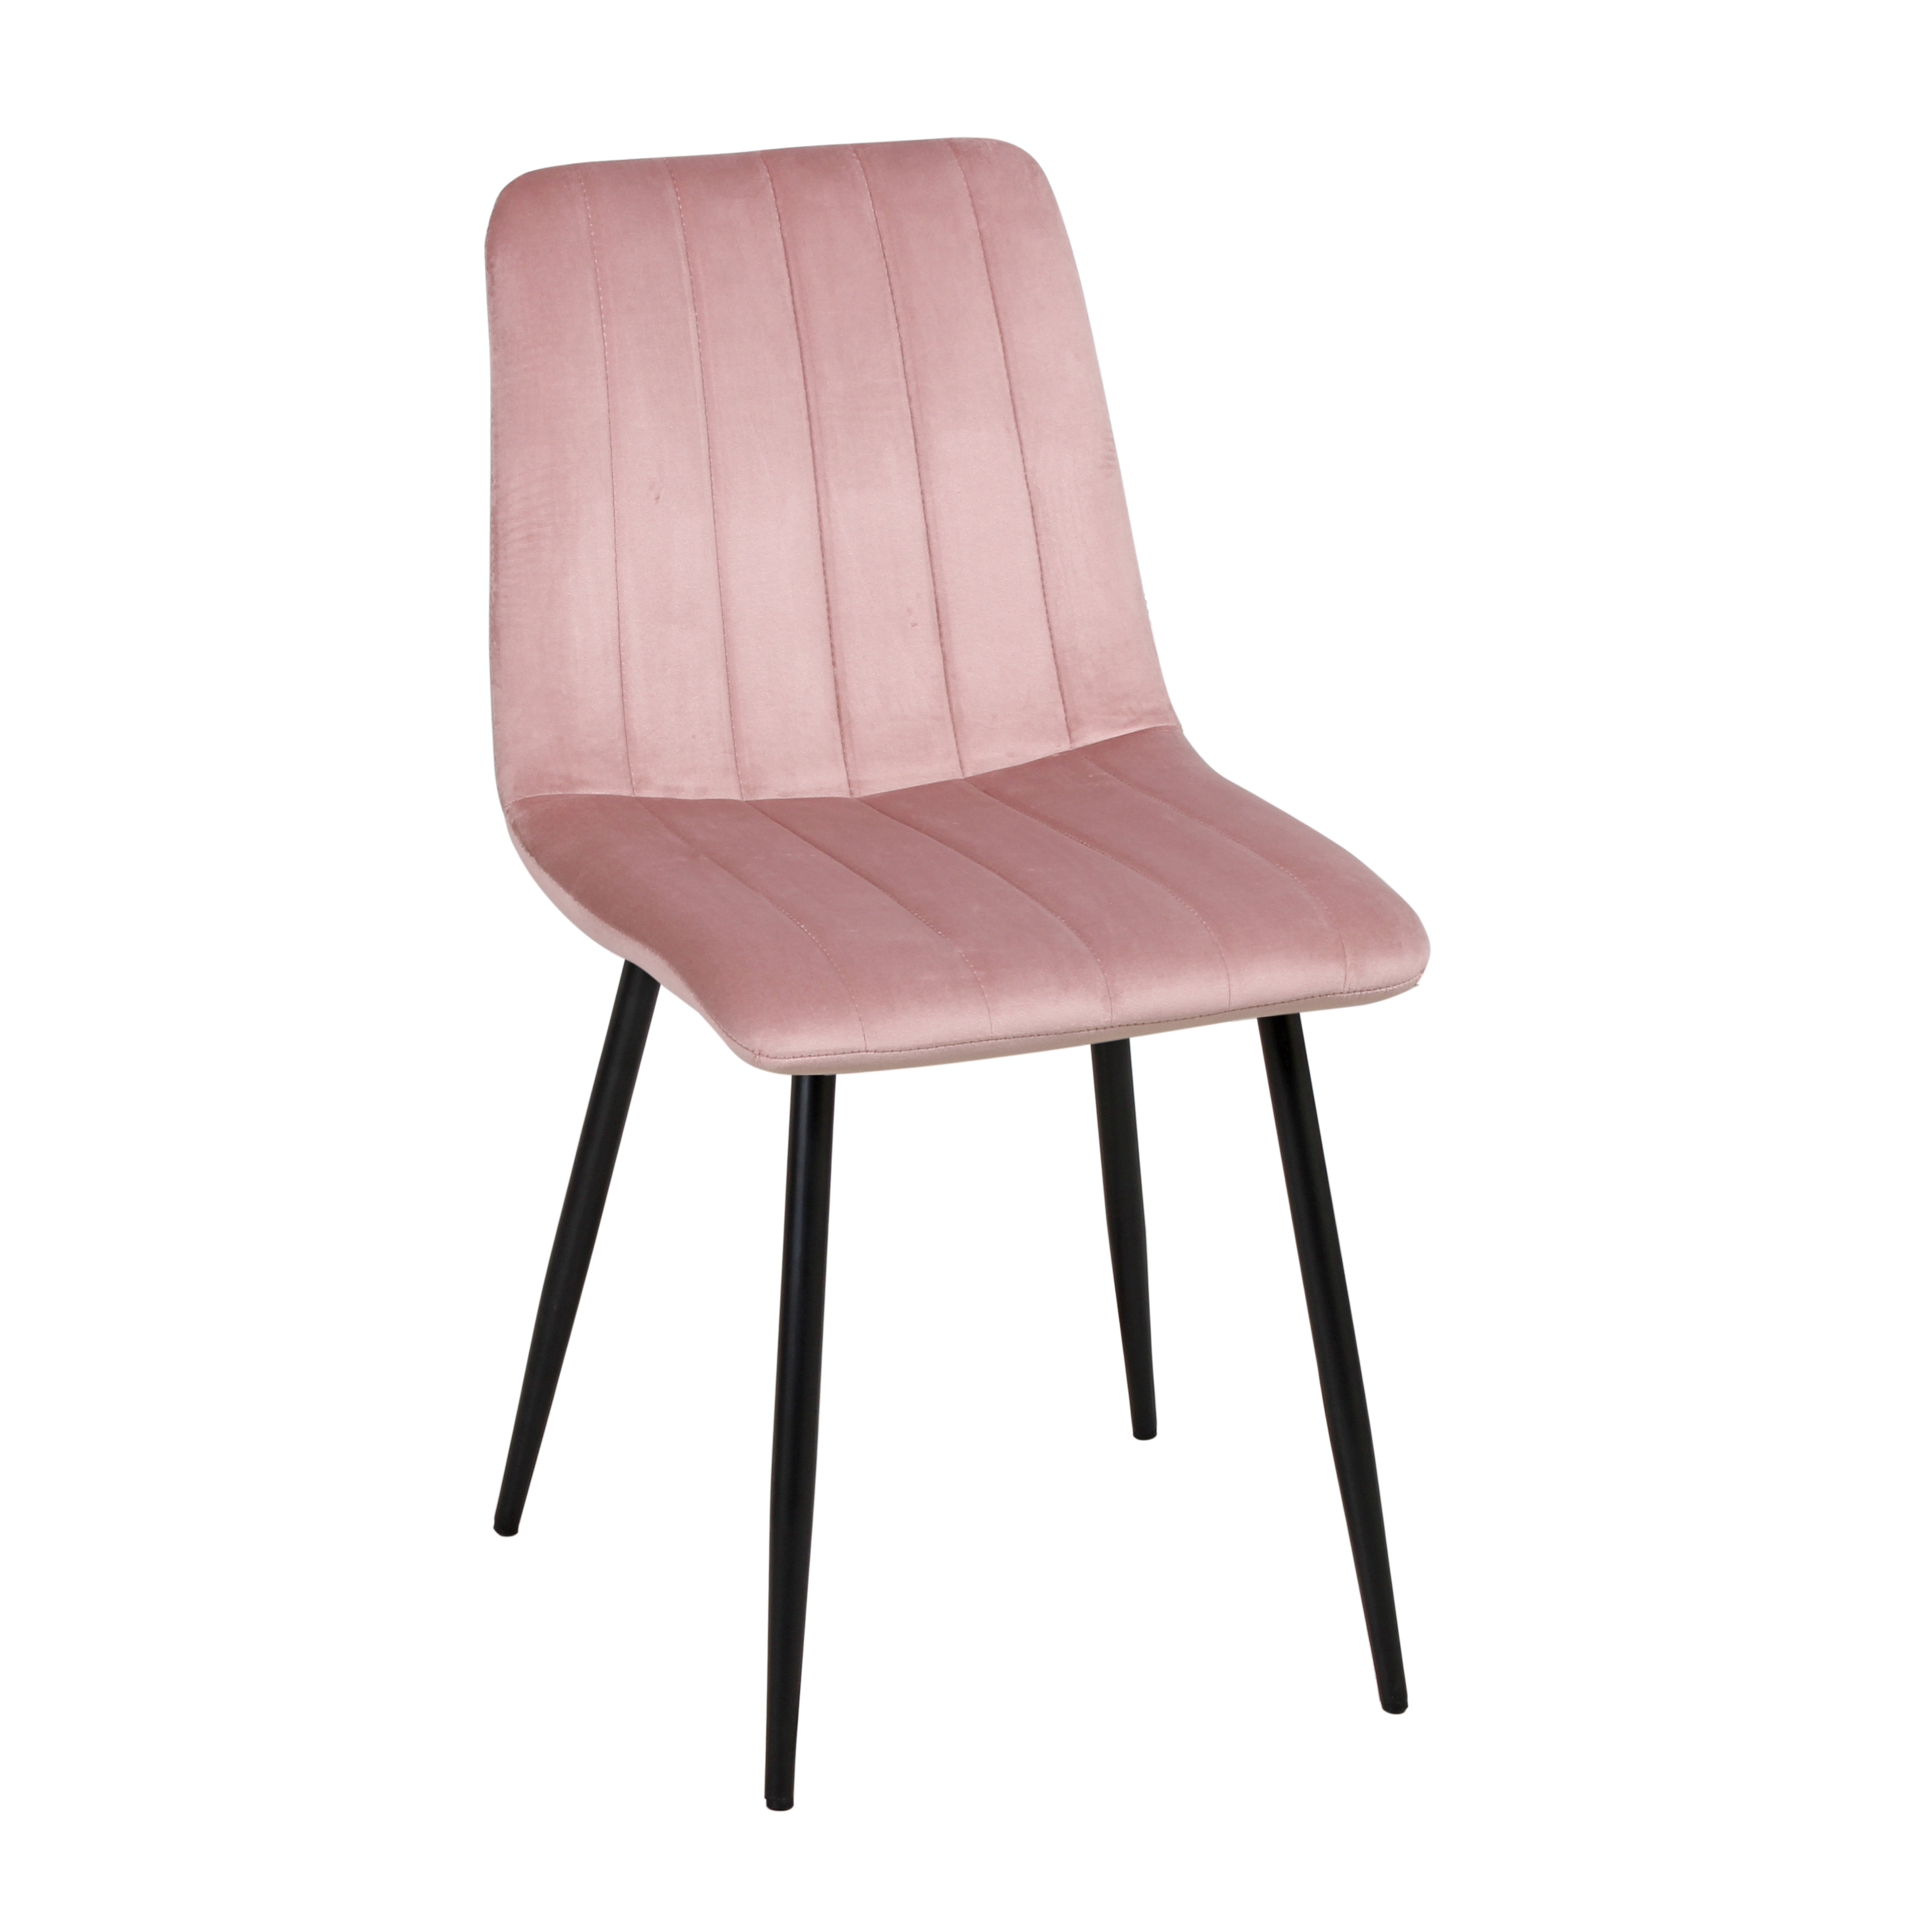 фото Стул империя стульев дублин black wx-240 light pink, светло-розовый